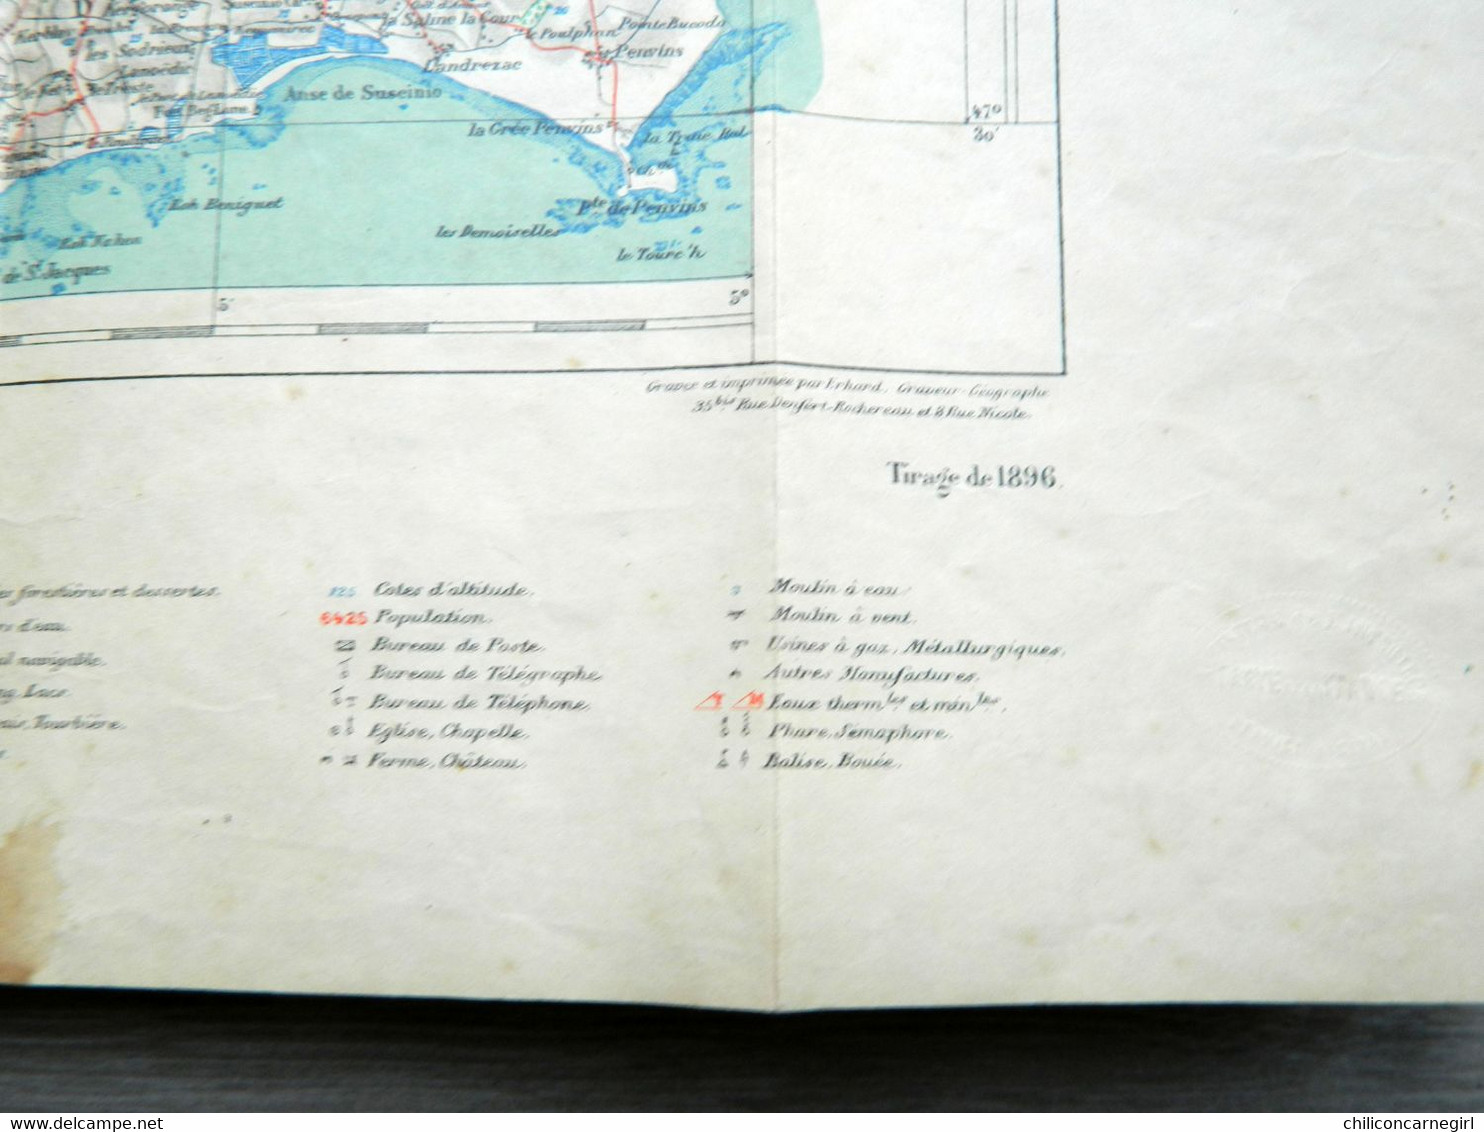 Carte Ministère de l'Intérieur - Echelle 1 : 100 000 - VANNES - Librairie Hachette - Tirage de 1896 - Feuille VI - 18